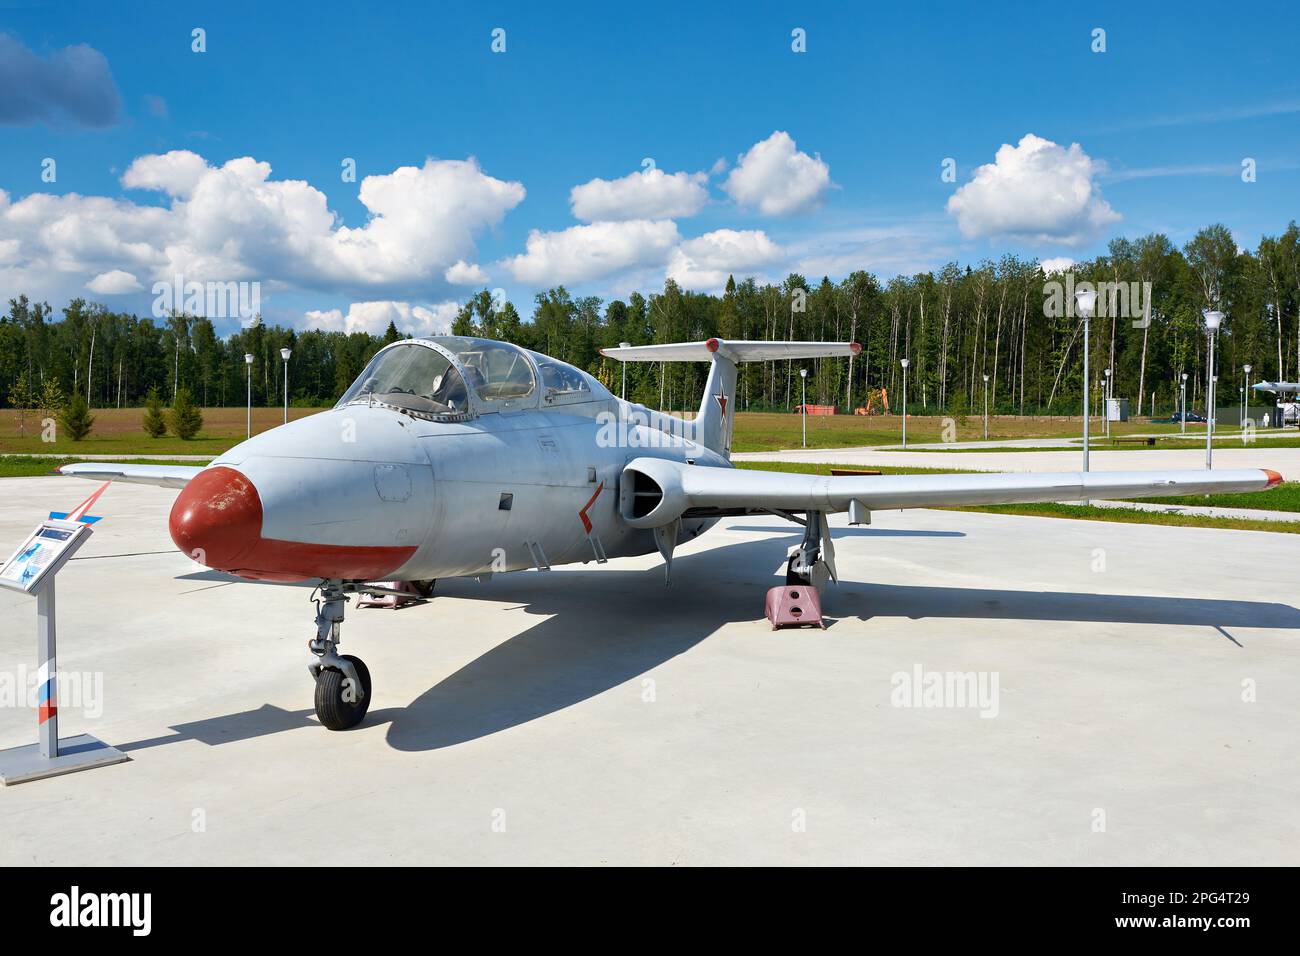 PARK PATRIOT, KUBINKA, MOSCOW REGION, RUSSIA - July 11, 2017: Aero L-29 Dolphin Maya military jet trainer aircraft Stock Photo